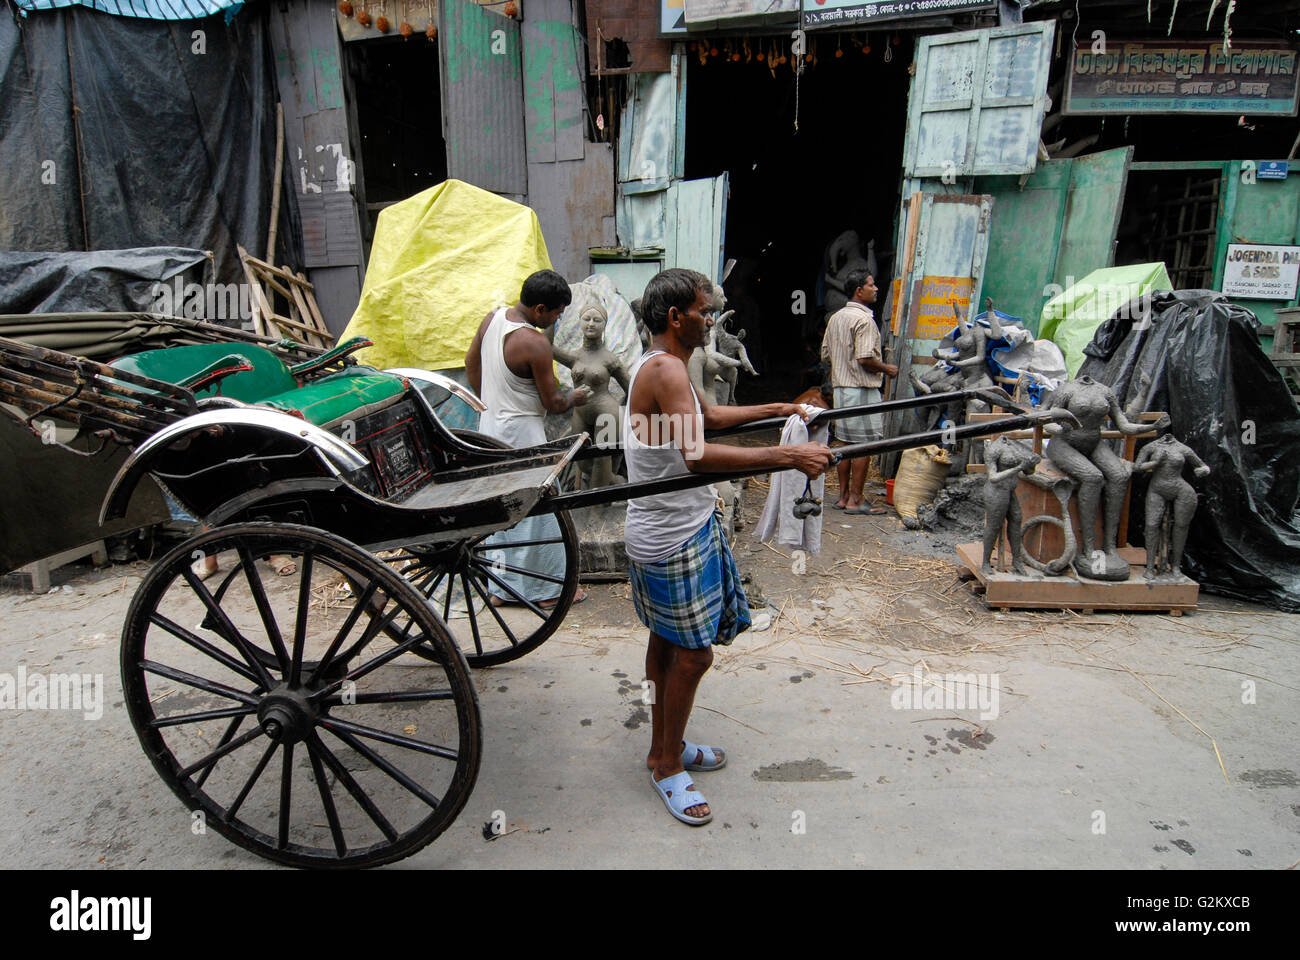 INDIA Westbengal Calcutta Kolkata, sobborgo Kumartuli, scultore forma idoli di argilla di divinità Indù per le feste religiose in bottega artigiana, uomo-powered rickshaw Foto Stock